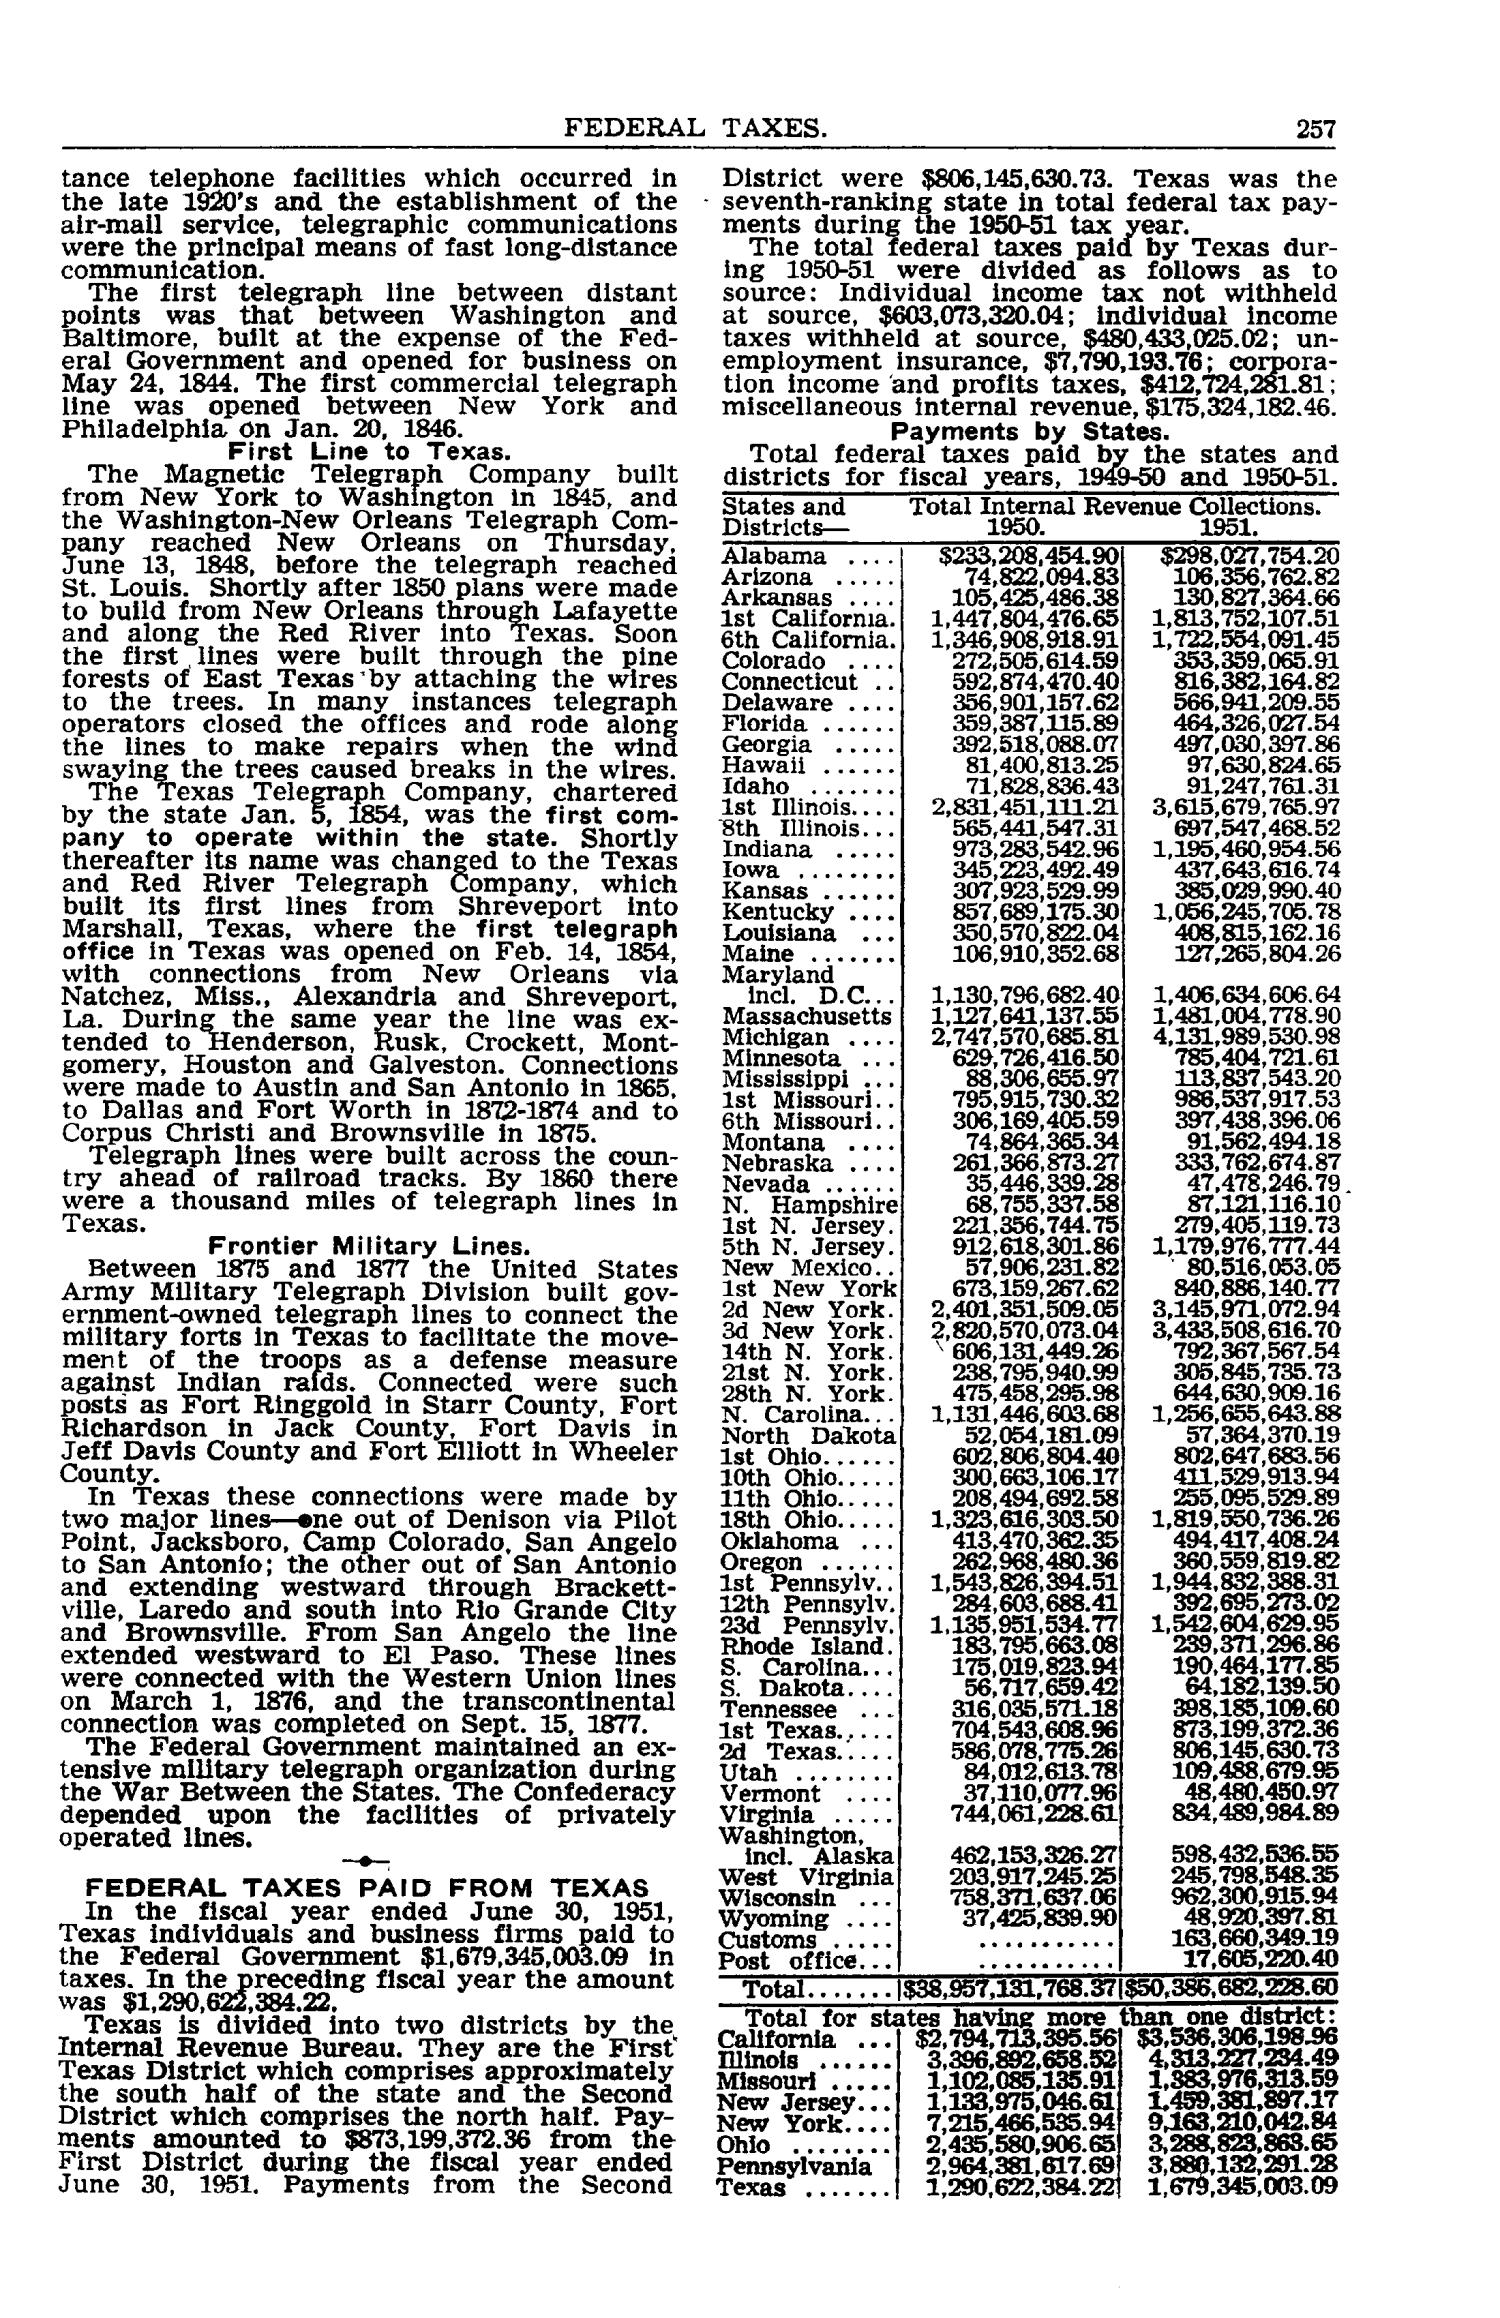 Texas Almanac, 1952-1953
                                                
                                                    257
                                                